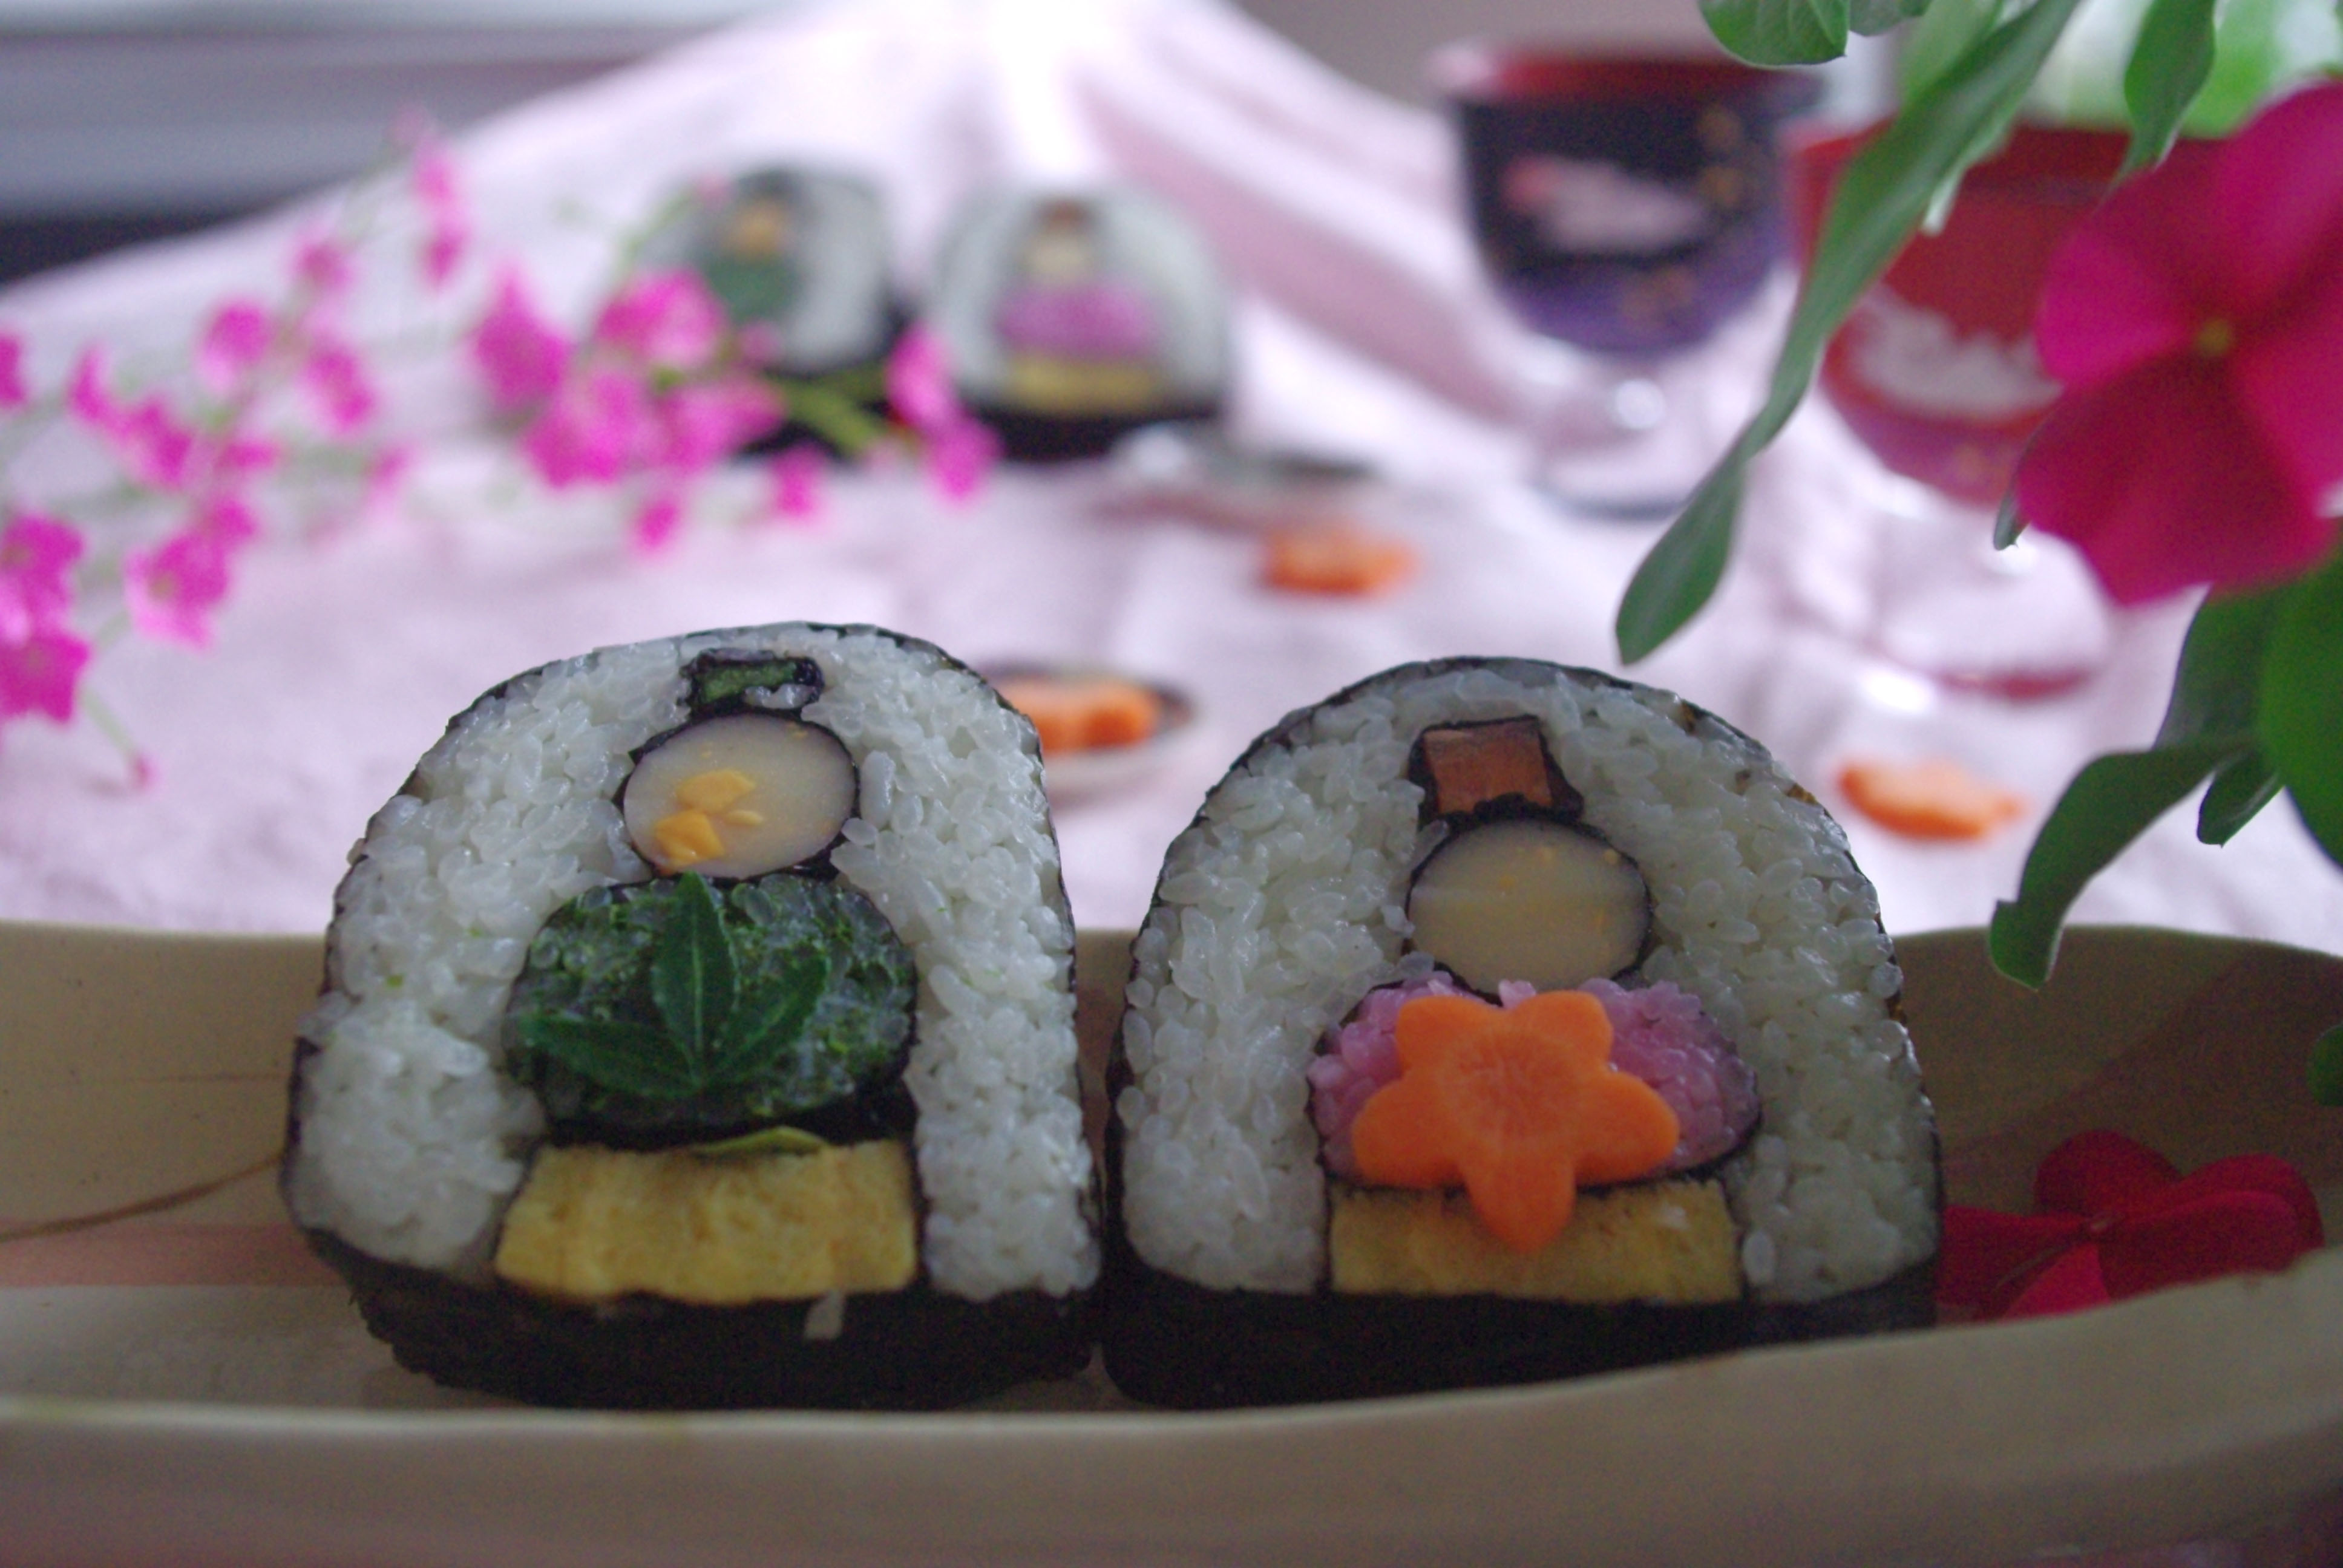 飾り巻き寿司で ひな祭り のレシピ 作り方 秋山 直美 料理教室検索サイト クスパ